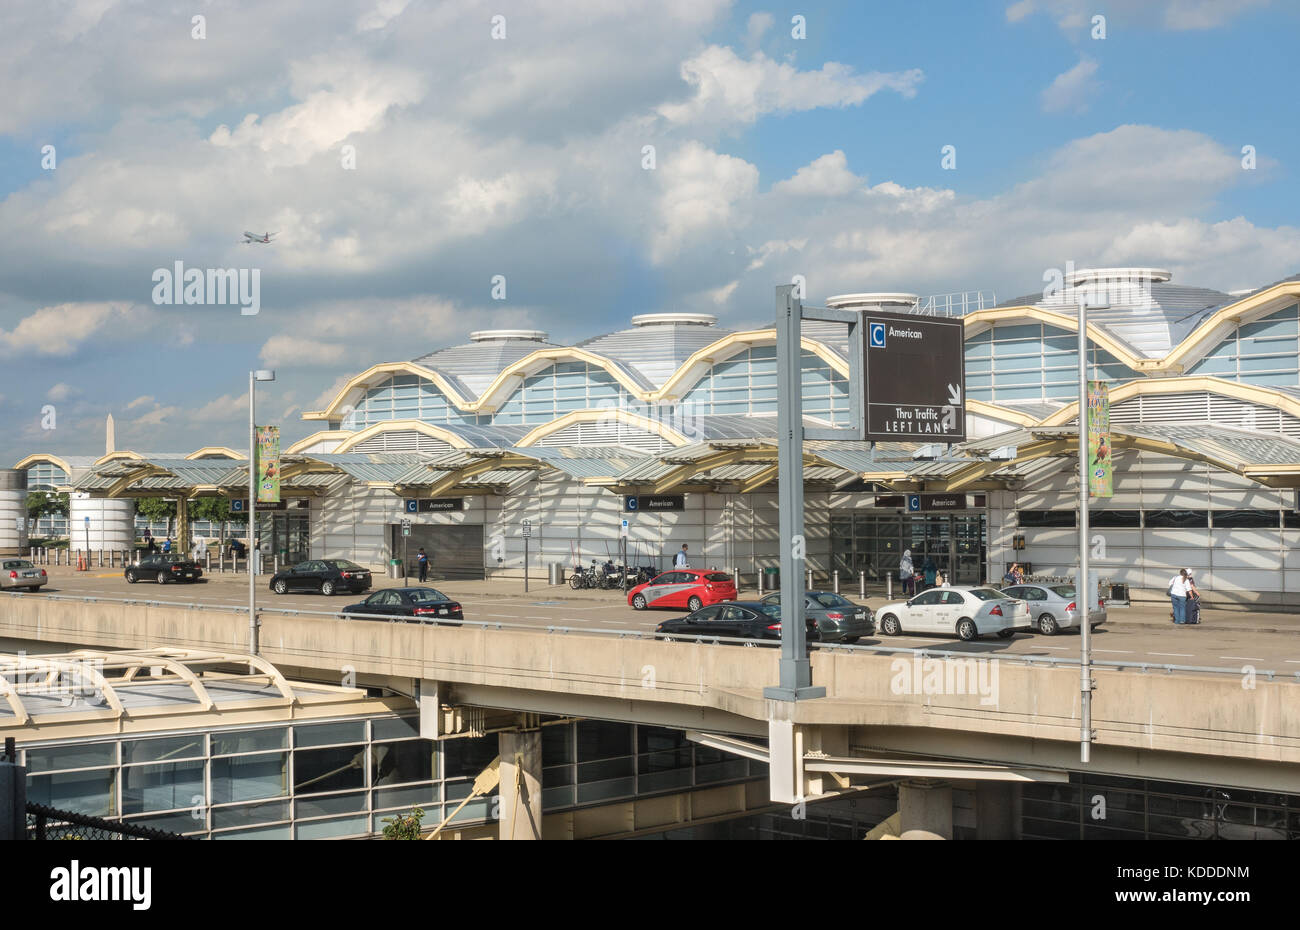 Aéroport national de Washington vu de la station de métro plate-forme. Jet dans le ciel sur la gauche. L'aéroport national Reagan, connu sous le nom de DCA, se trouve en fait à Arlington, en Virginie Banque D'Images